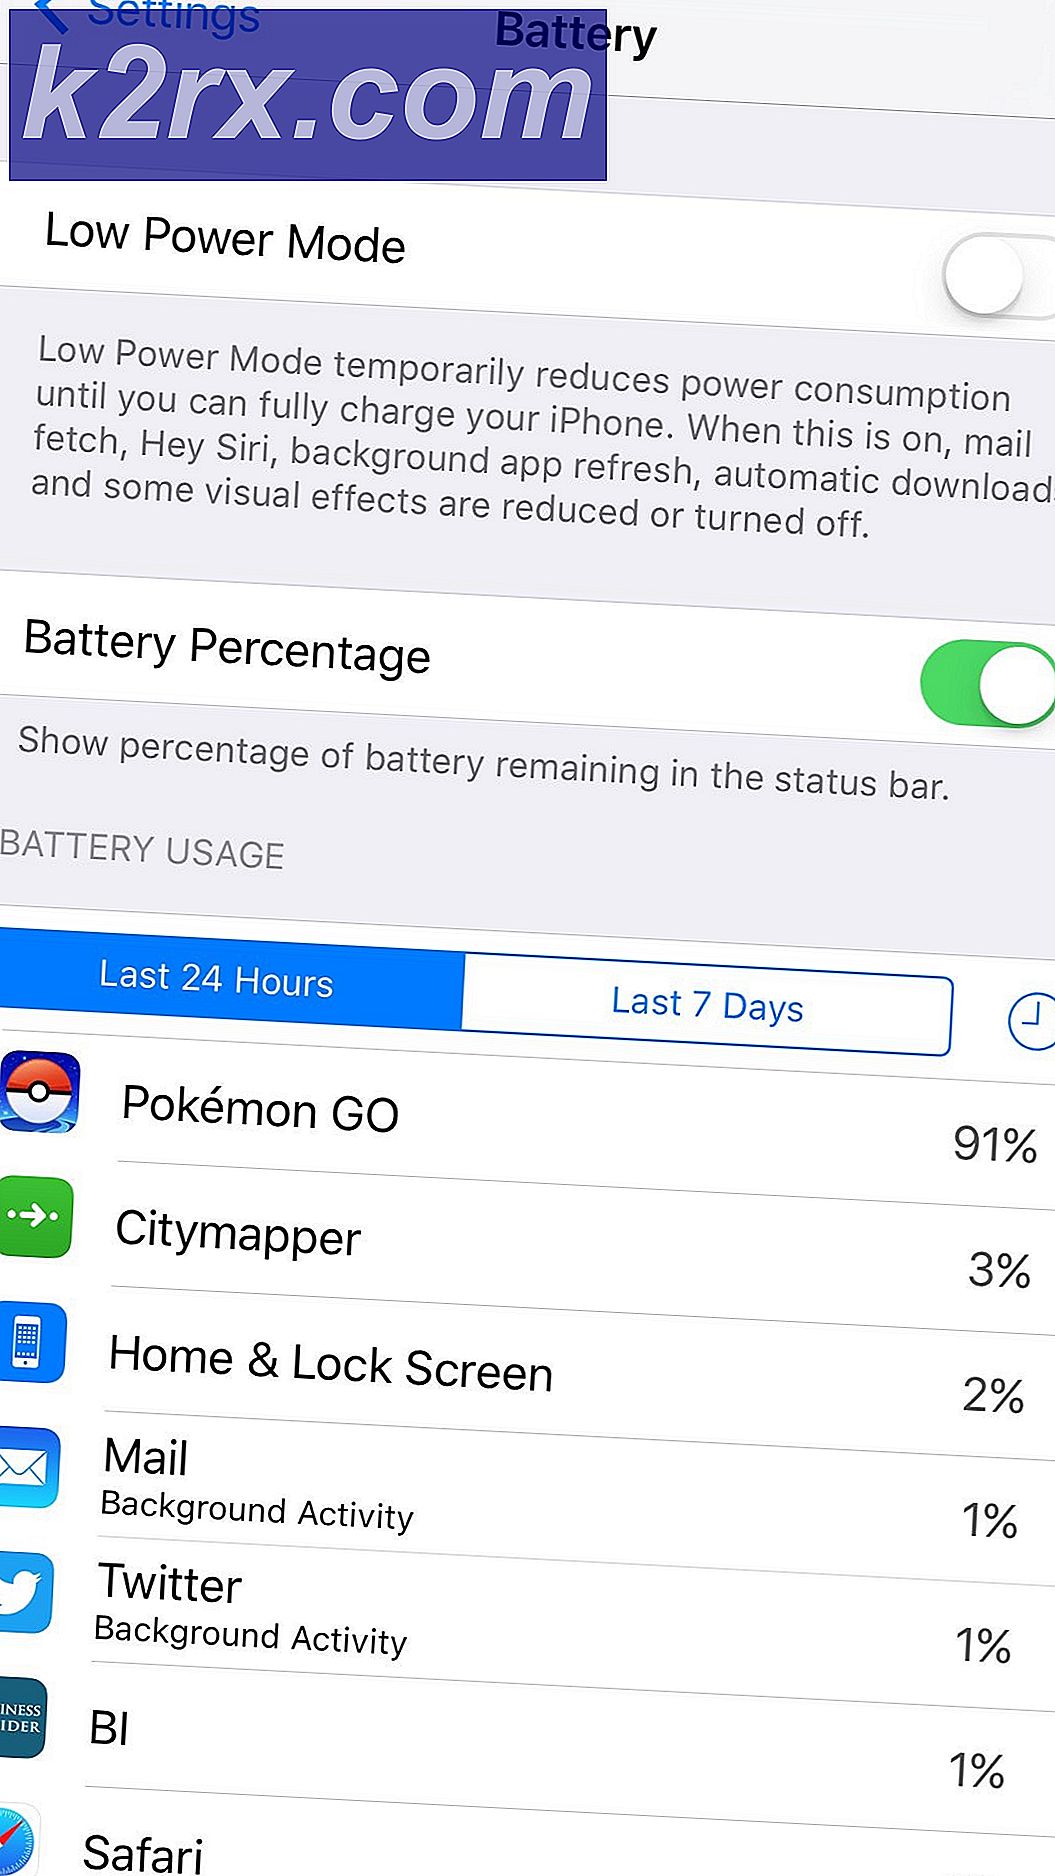 So bewahren Sie die Batterie Ihres Telefons beim Pokémon GO auf